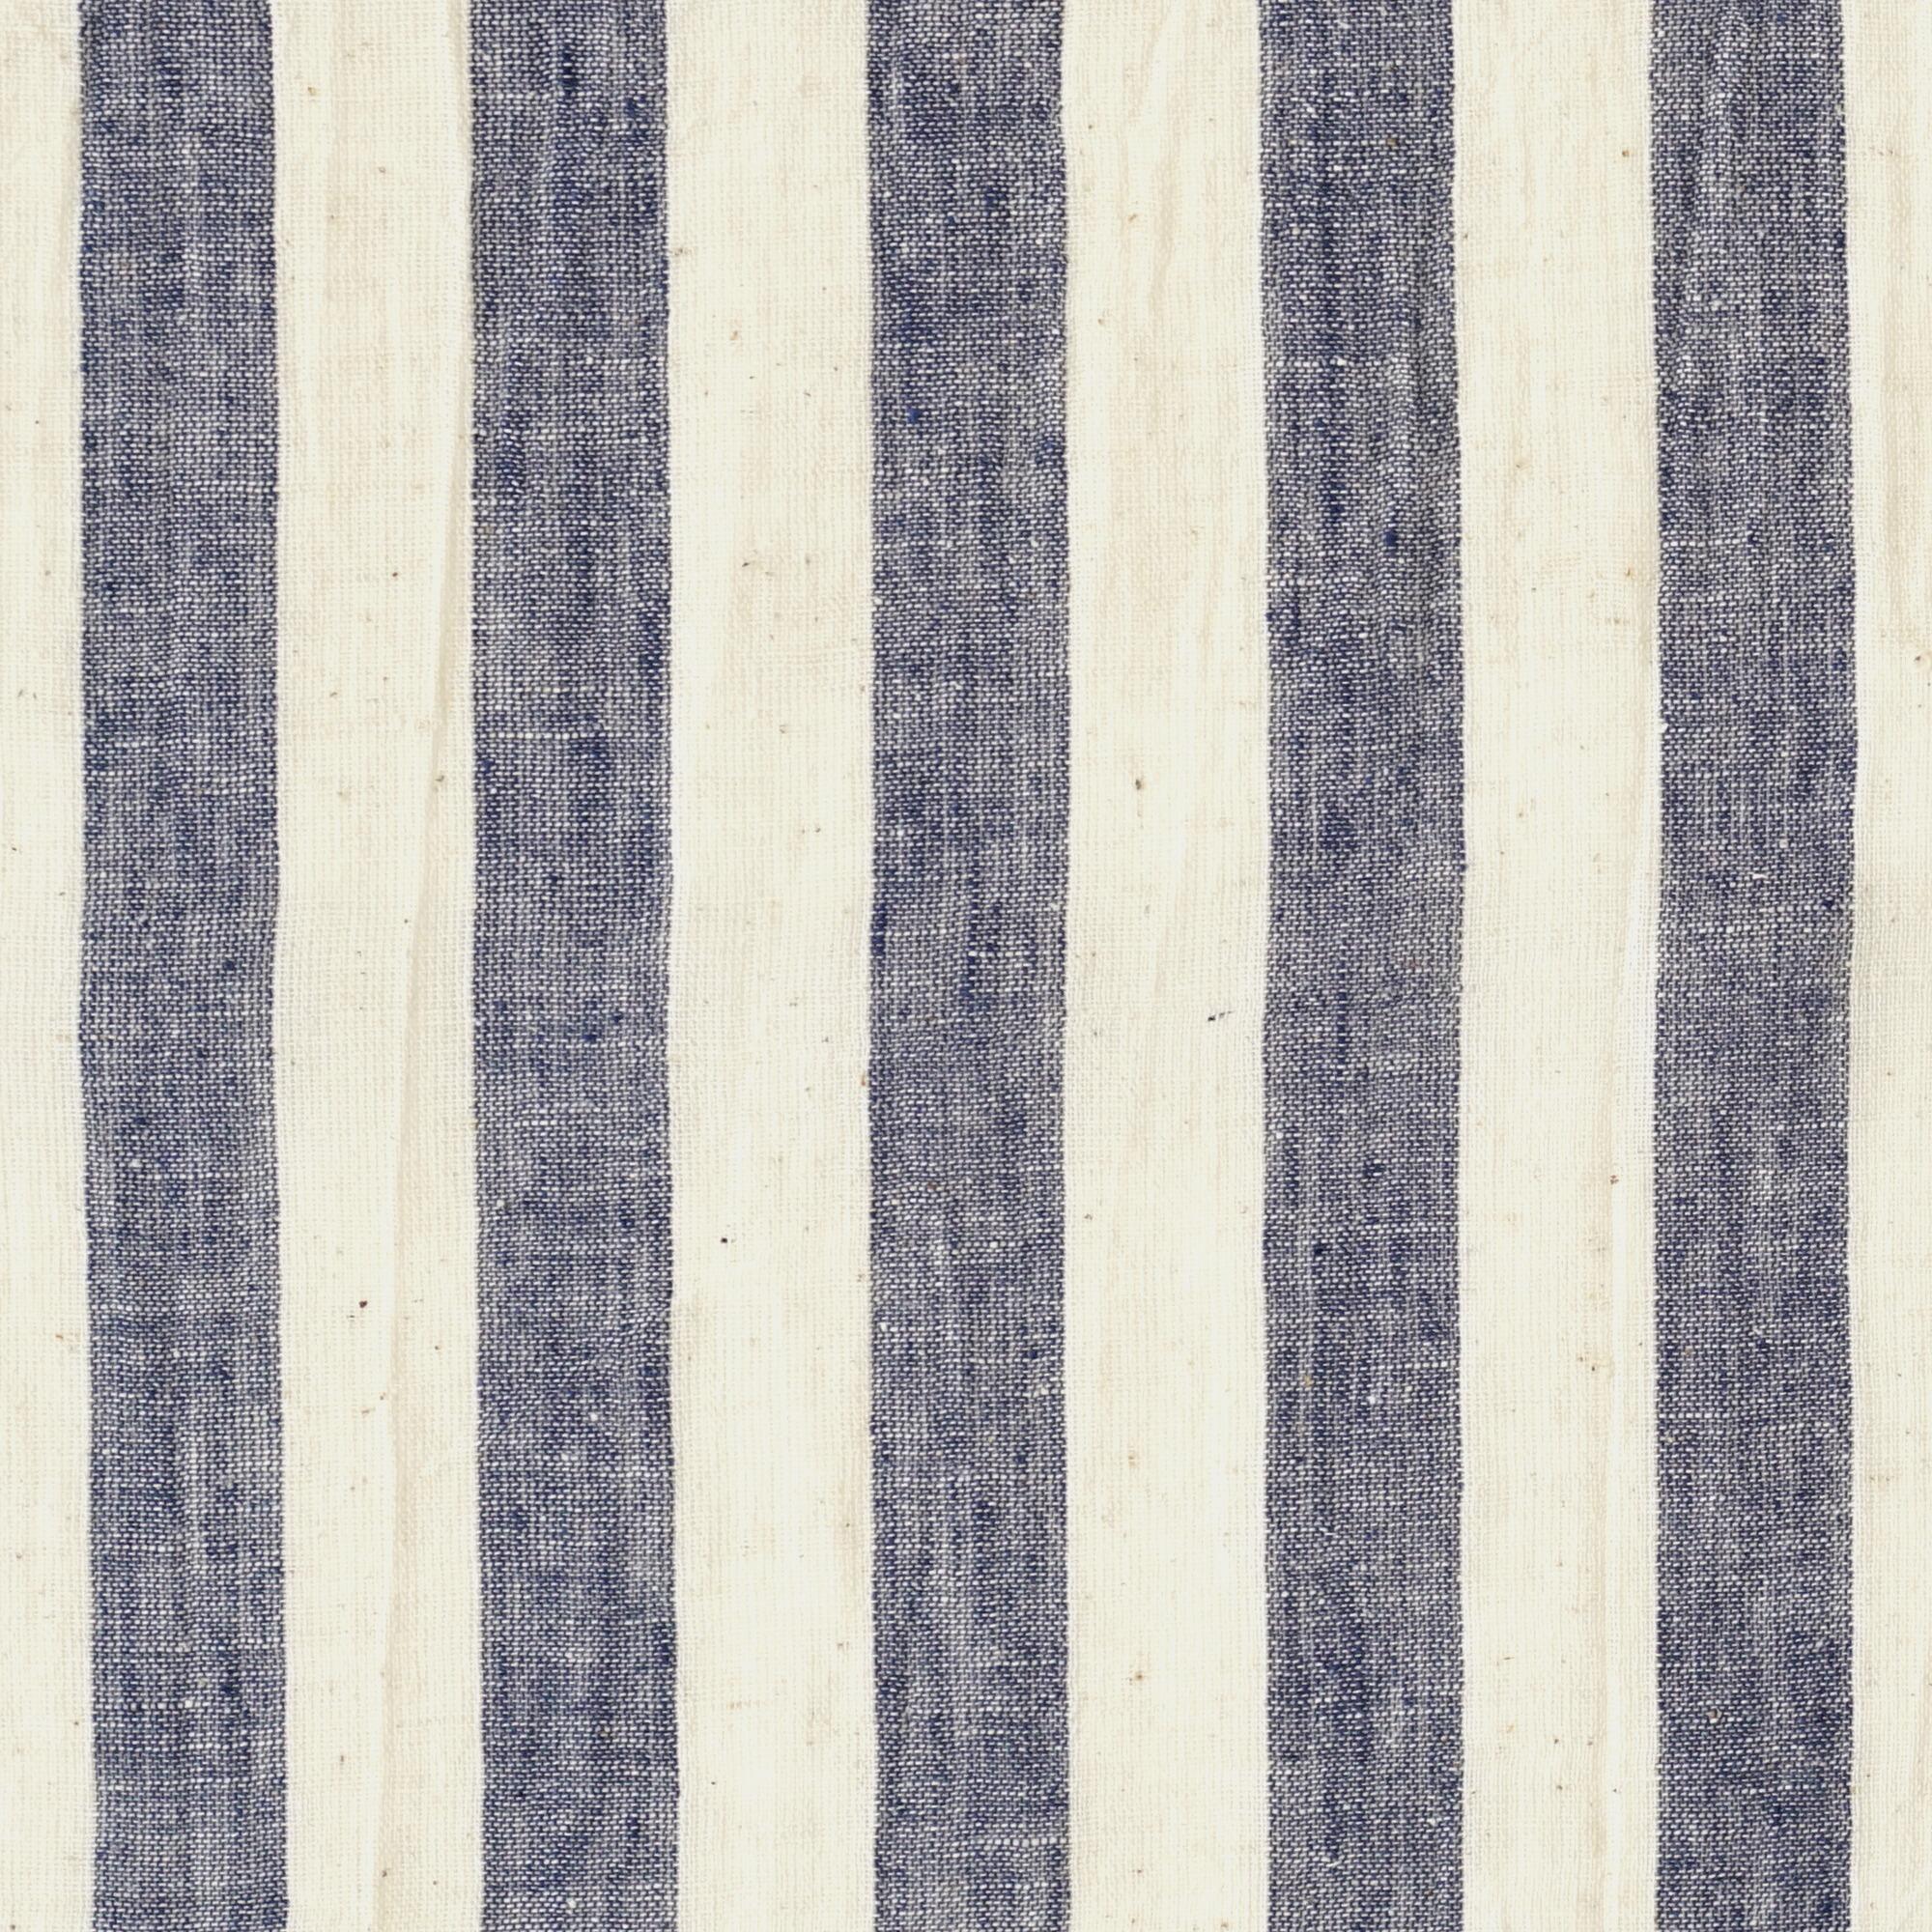 KJC03 - Organic Kala Cotton - Handloom Woven - Plain Weave - 1 by 1 - Stripes - Blue Yarn Dye - Flat